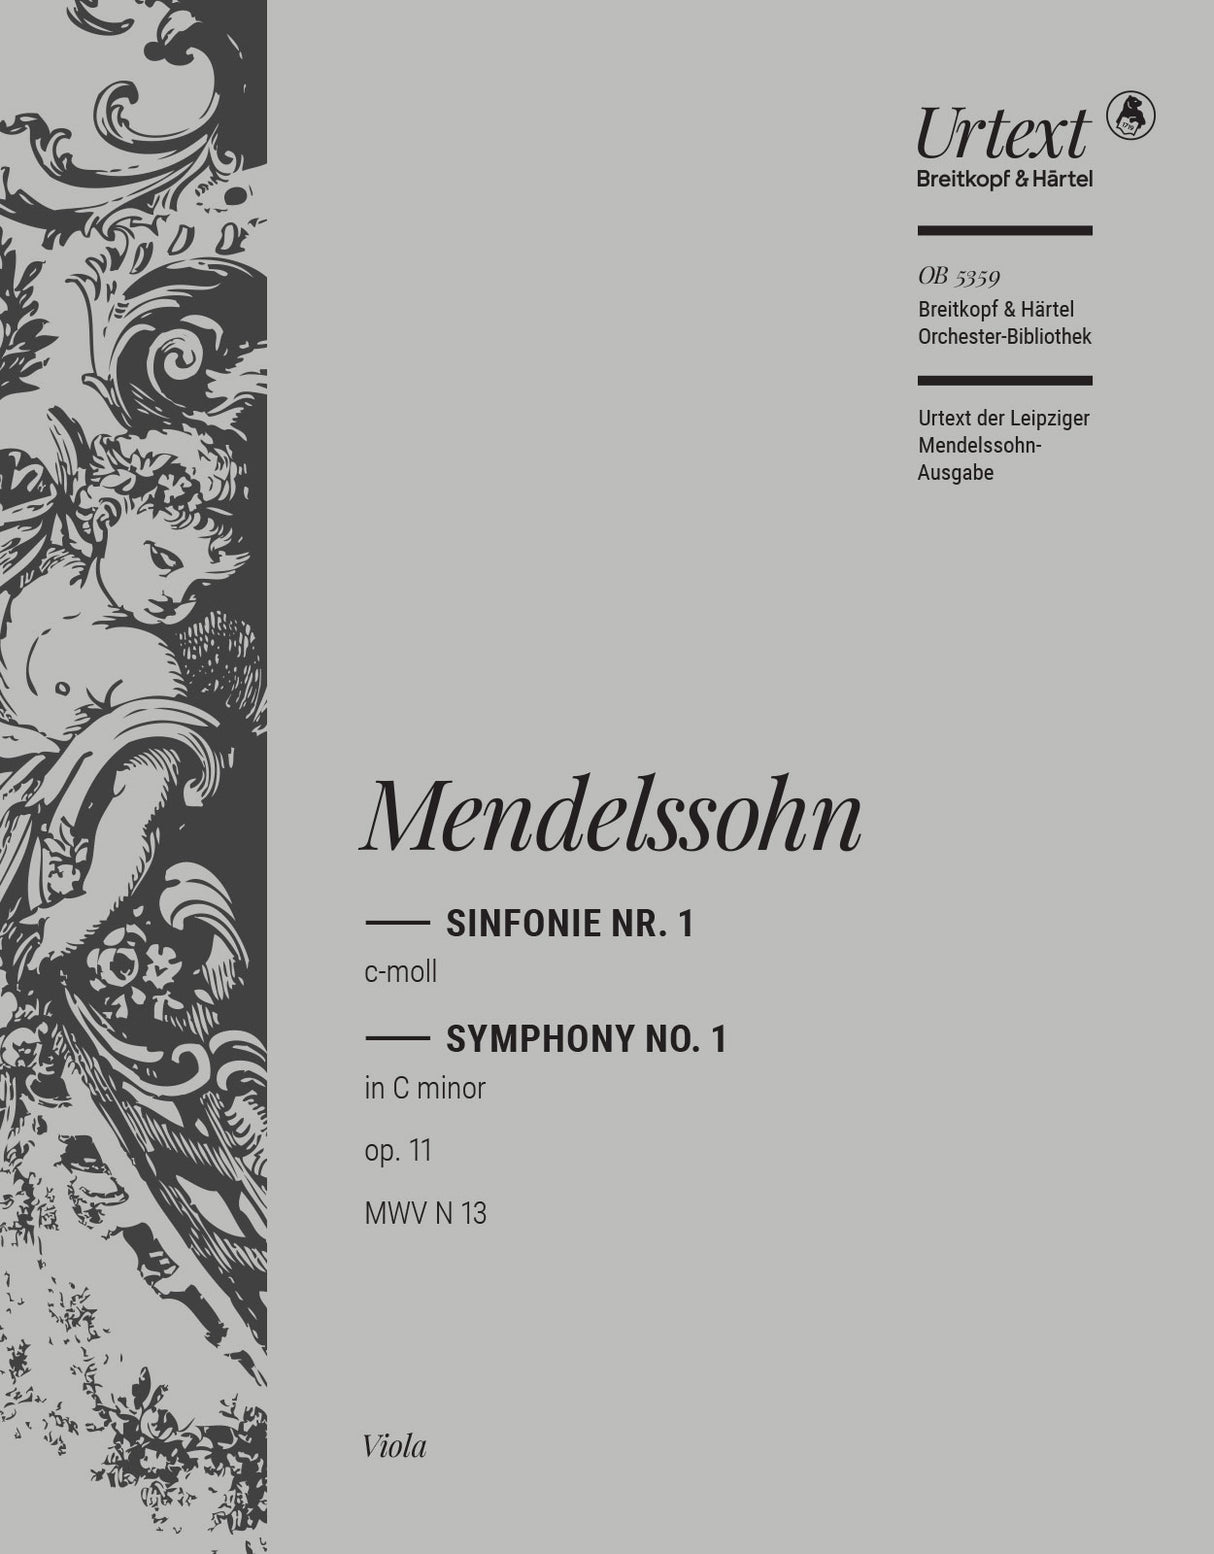 Mendelssohn: Symphony No. 1 in C Minor, MWV N 13, Op. 11